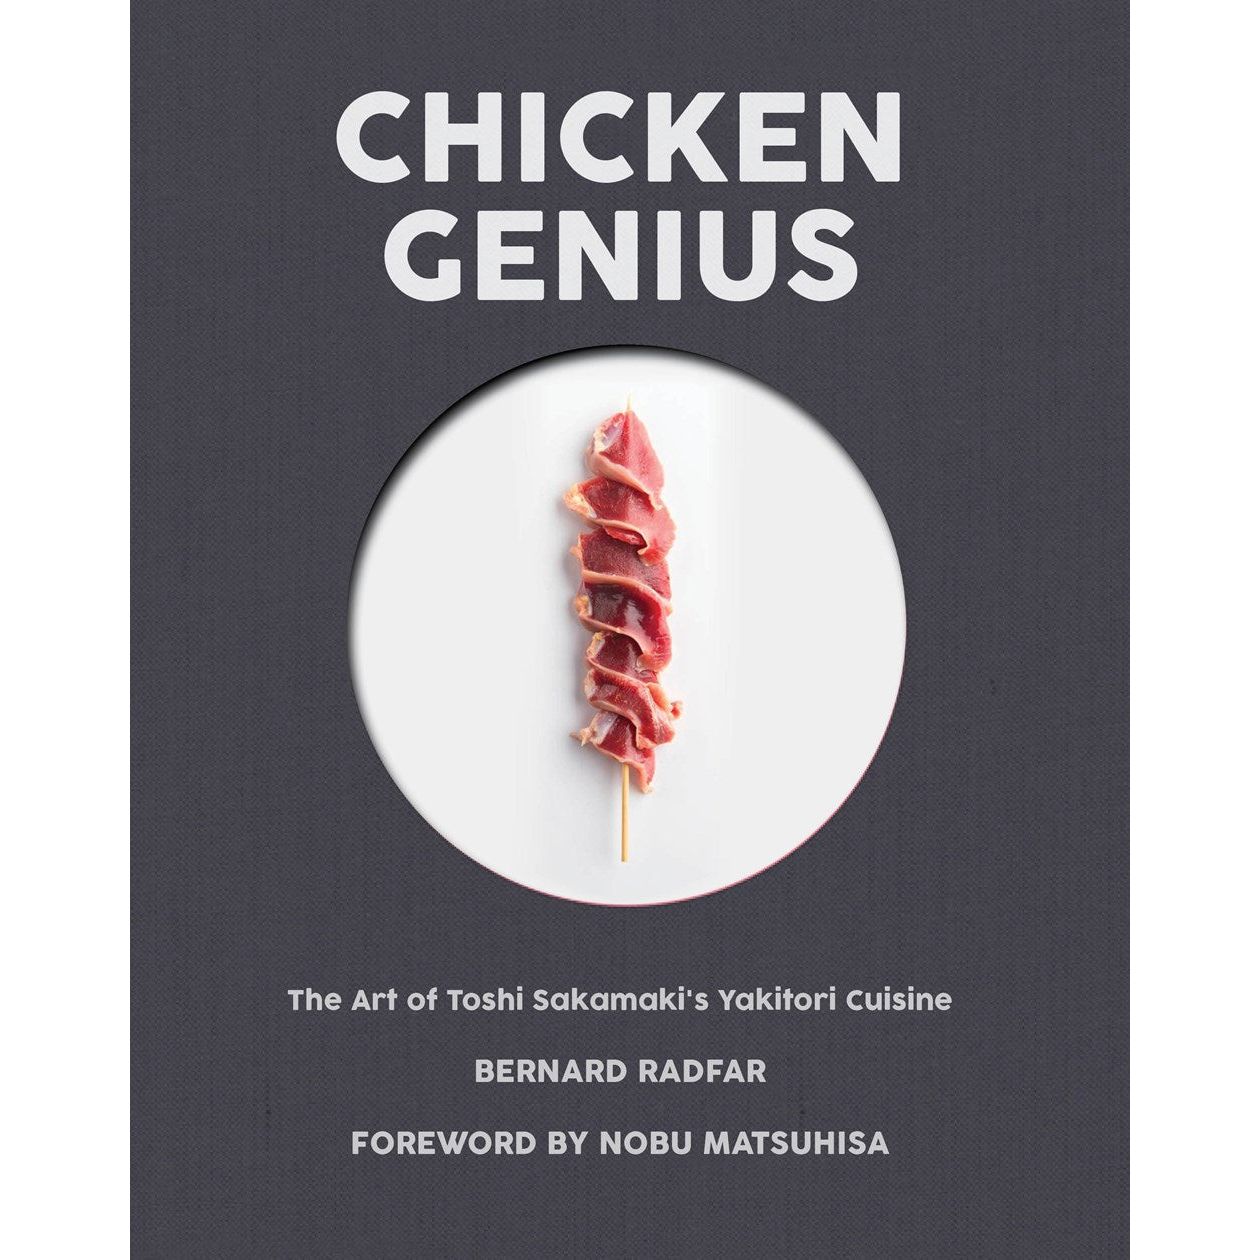 Chicken Genius (Bernard Radfar)